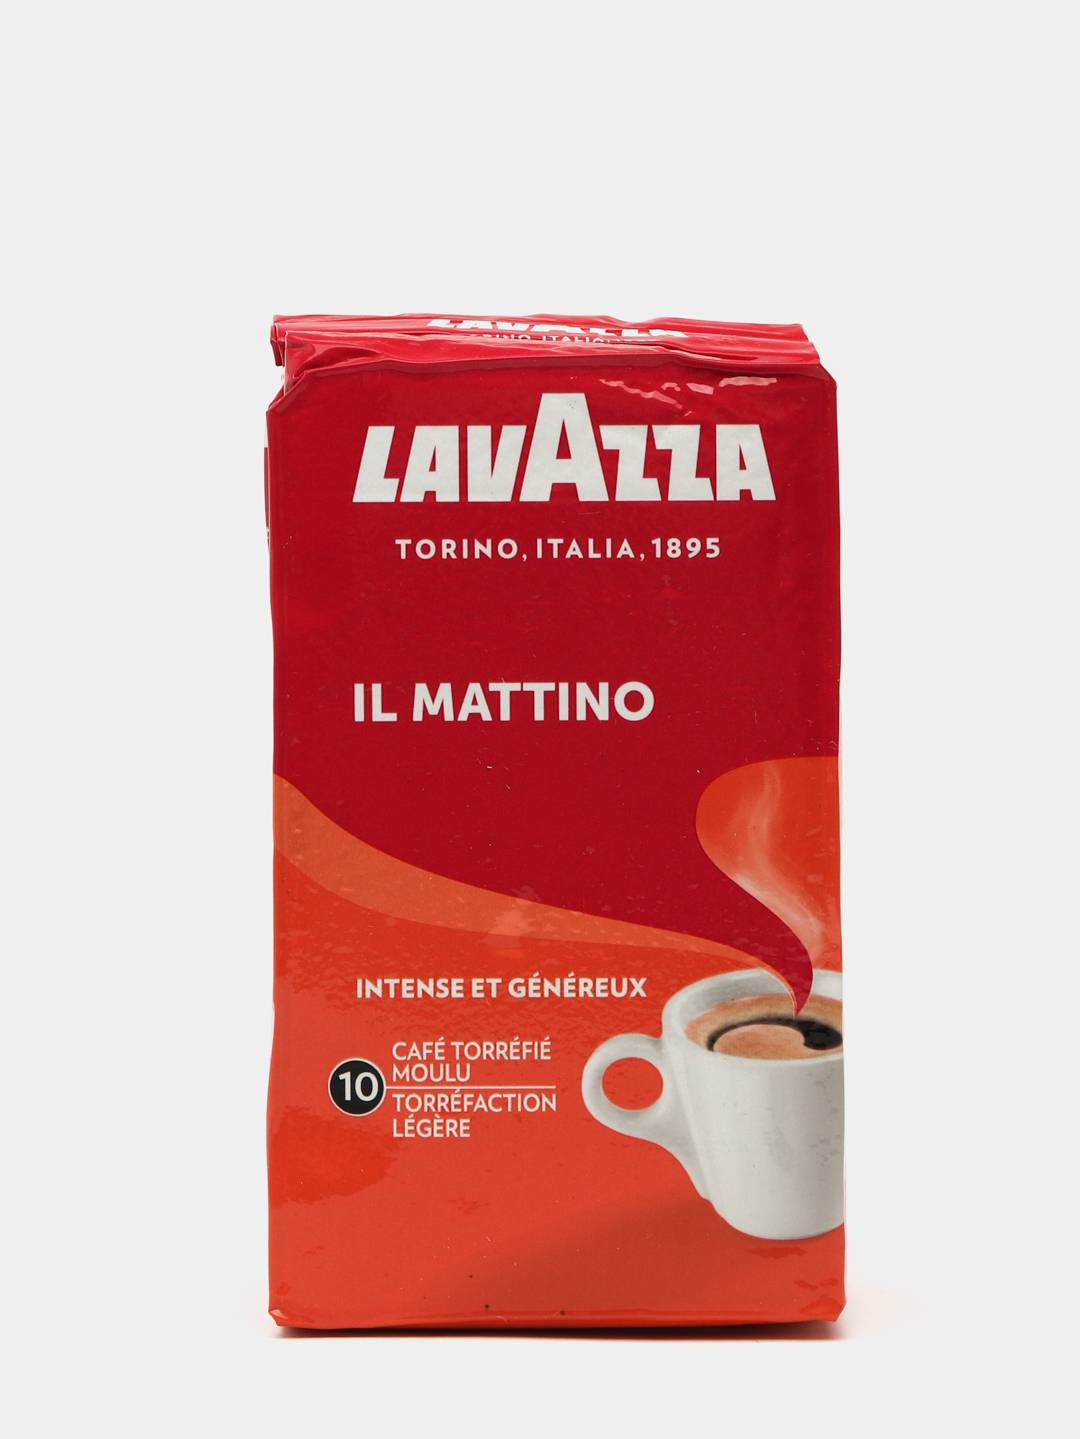 Кофе лавацца крема молотый. Lavazza кофе молотый 250 гр. Кофе молотый Lavazza il mattino вакуумная упаковка. Кофе Лавацца в вакуумной упаковке. Lavazza 7/10.